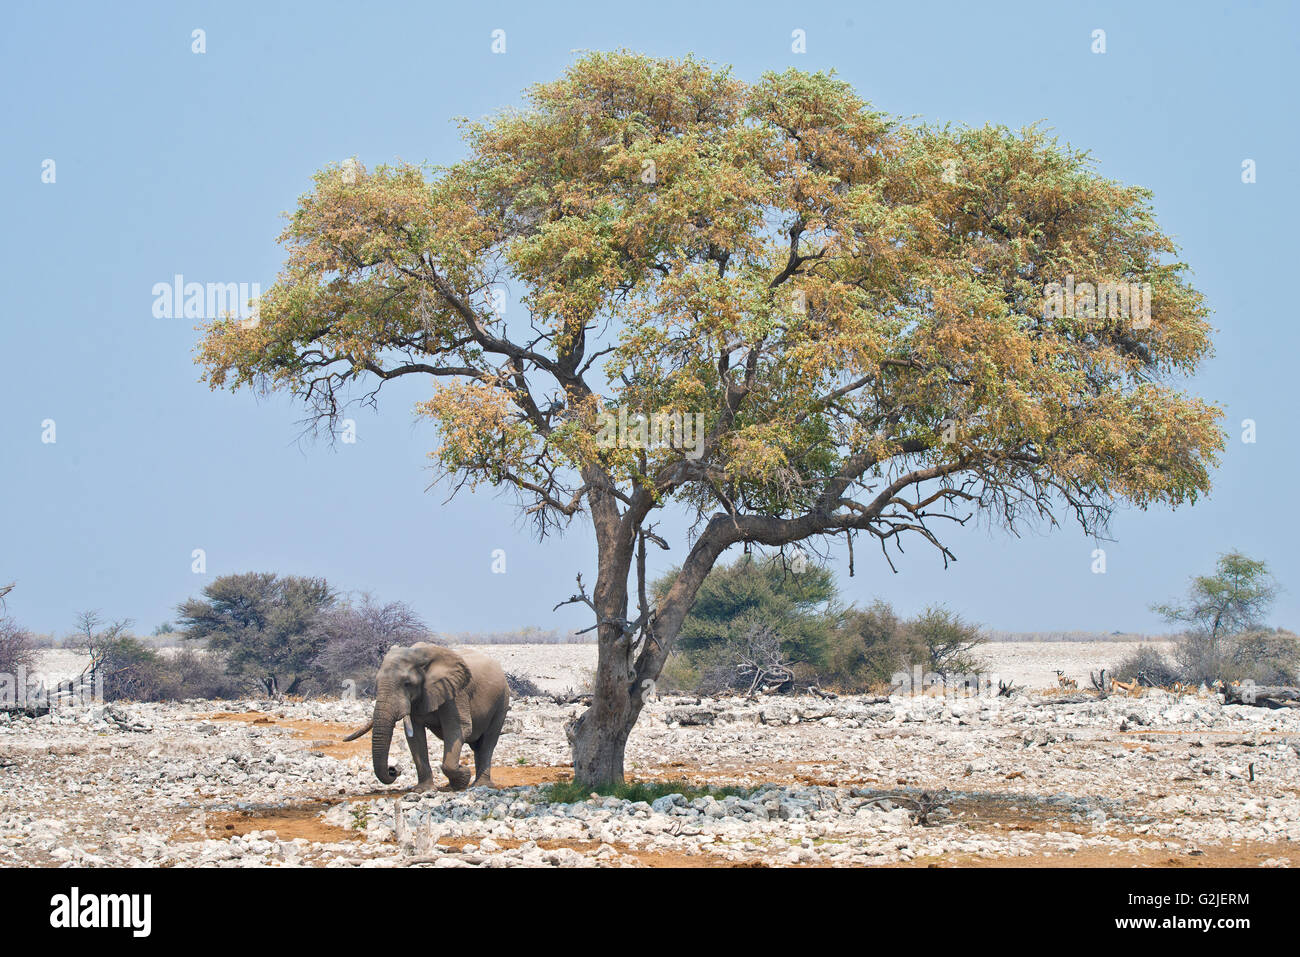 African elephant (Loxodonta africana), Etosha National Park, Namibia, southern Africa Stock Photo